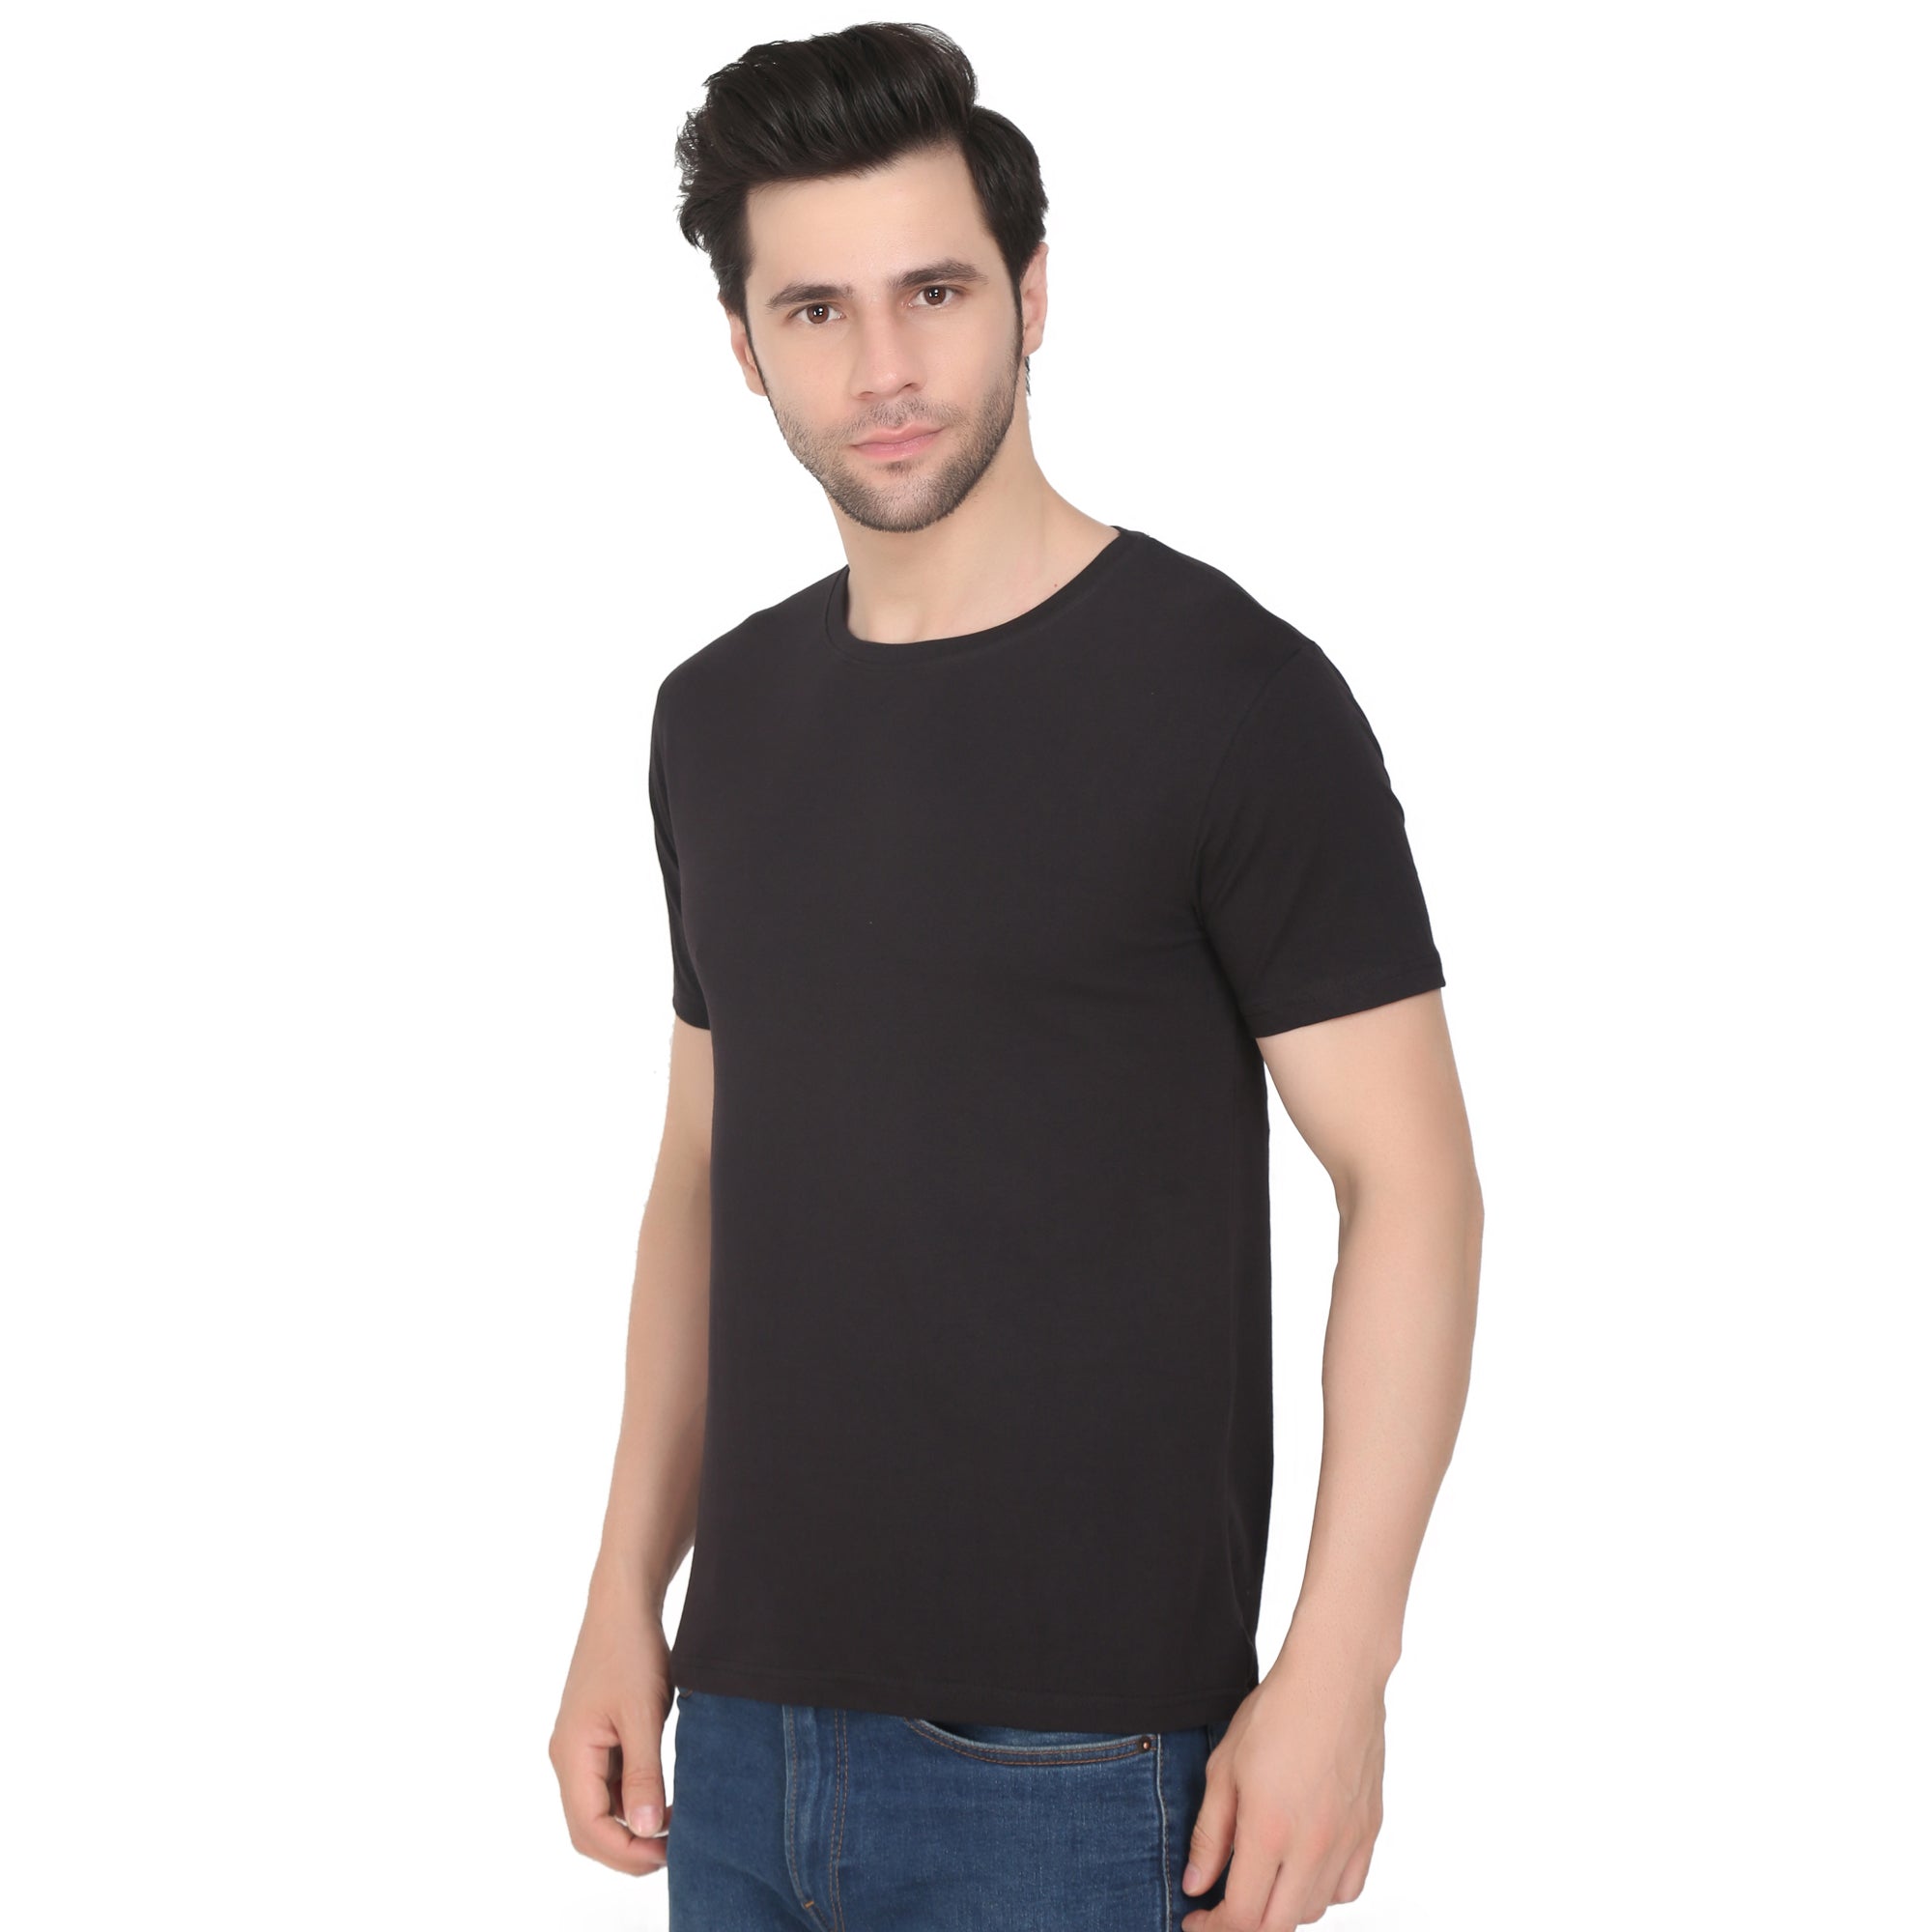 Men Four Way Stretch Cotton Plain T-shirt - Black Colour